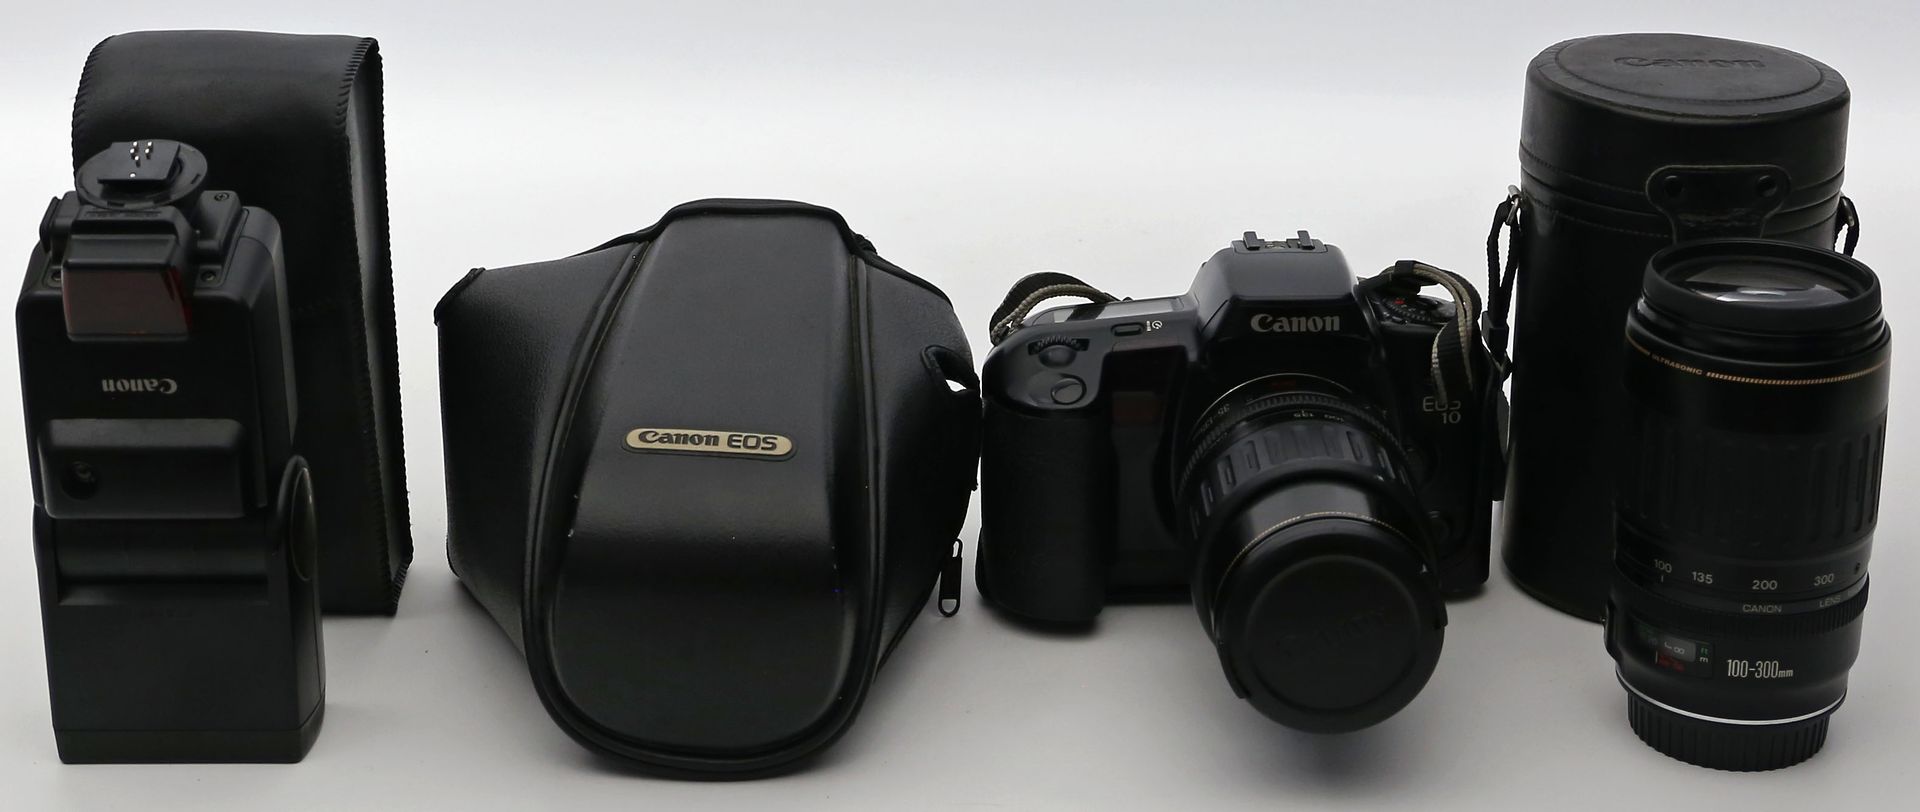 Spiegelreflexkamera "Canon EOS 10".